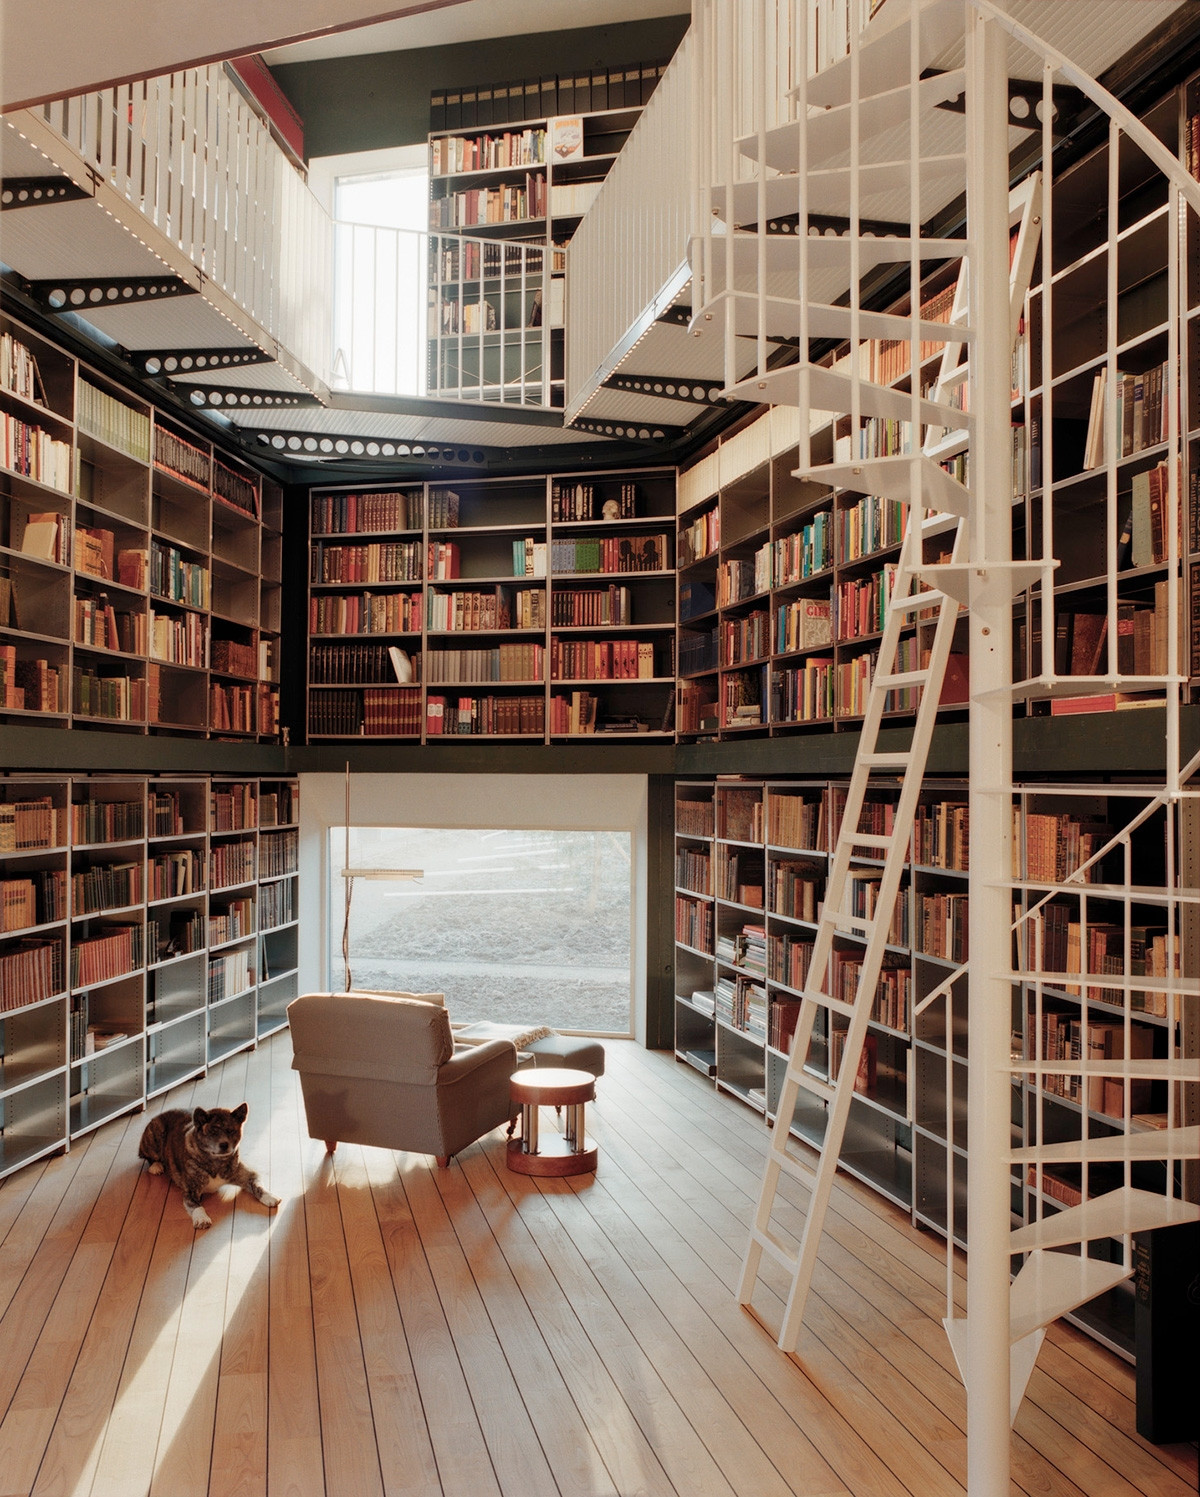 Thiết kế thư viện gia đình theo tầng tầng, lớp lớp sẽ tạo nên một không gian vô cùng thú vị và ấn tượng. Thư viện này được bài trí khá chuyên nghiệp, với thang chuyên dụng và cầu thang xoắn ốc và gác lửng.